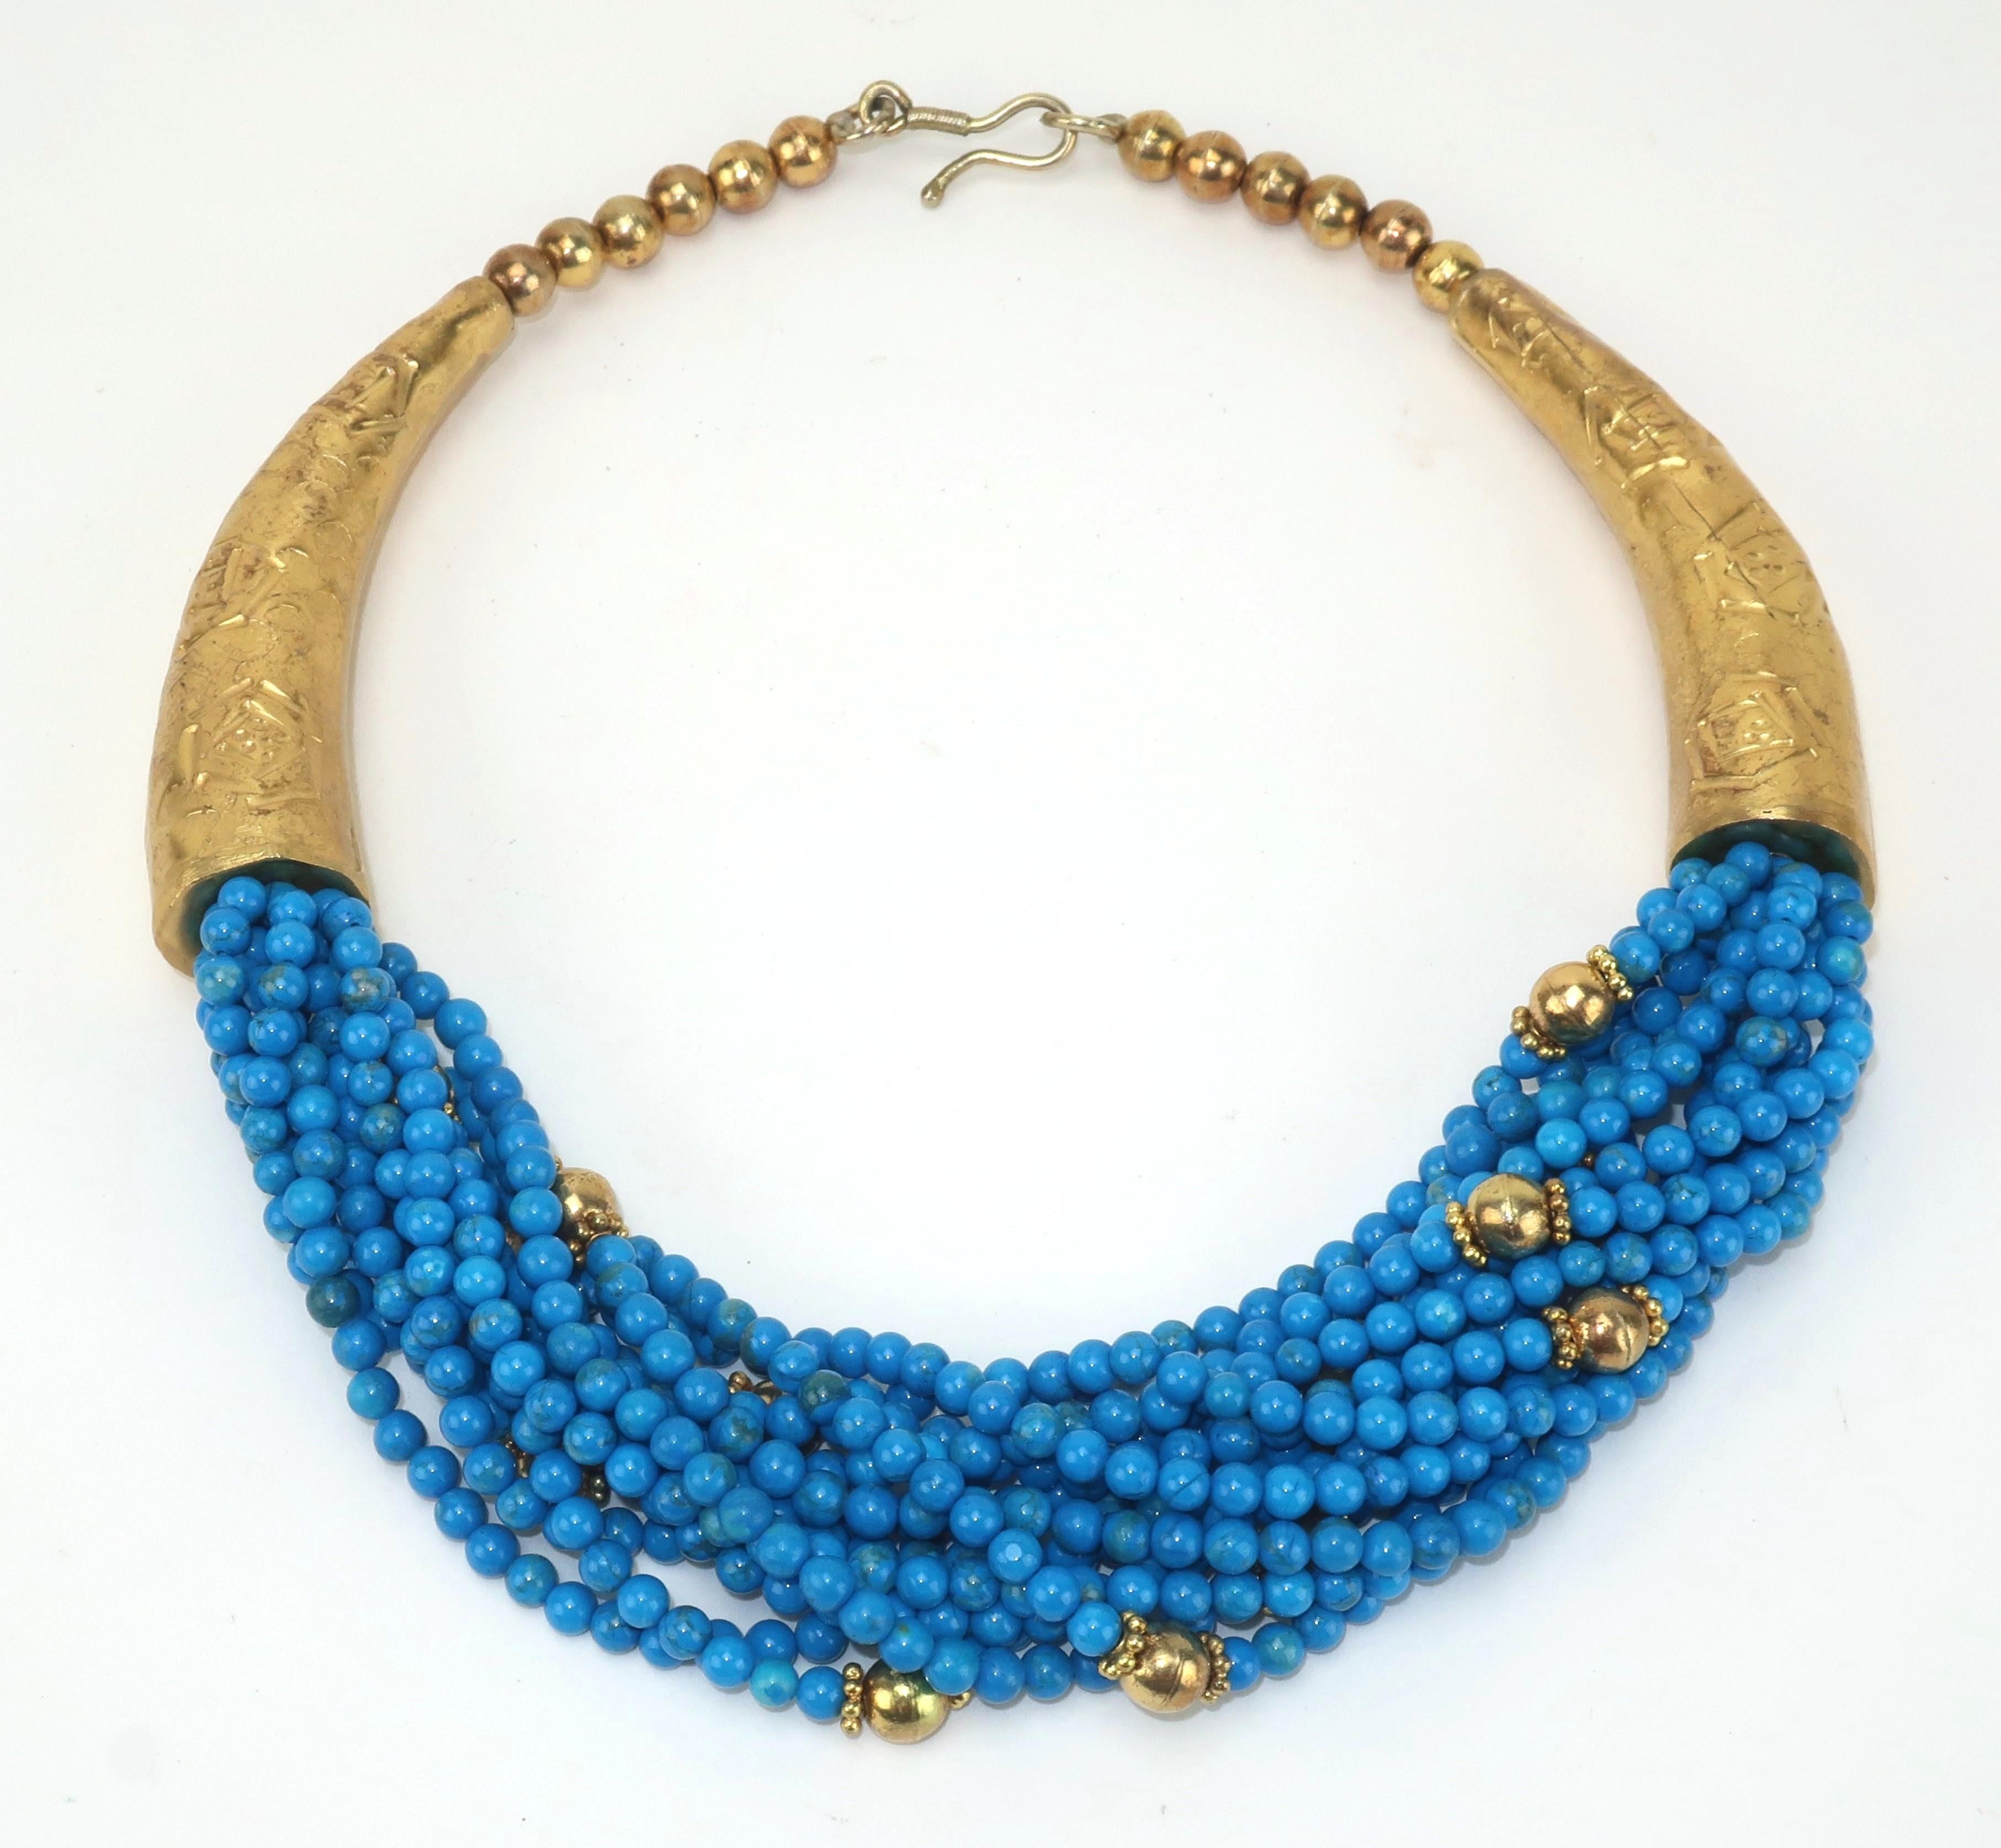 Mehrreihige Halskette im Vintage-Stil mit hellblauen Perlen und goldfarbenen Metallakzenten.  Ausgestattet mit einem J-Haken und unsigniert.  Der frühere Besitzer erwarb dieses schöne Stück in Ägypten und es hat tatsächlich eine wunderbare